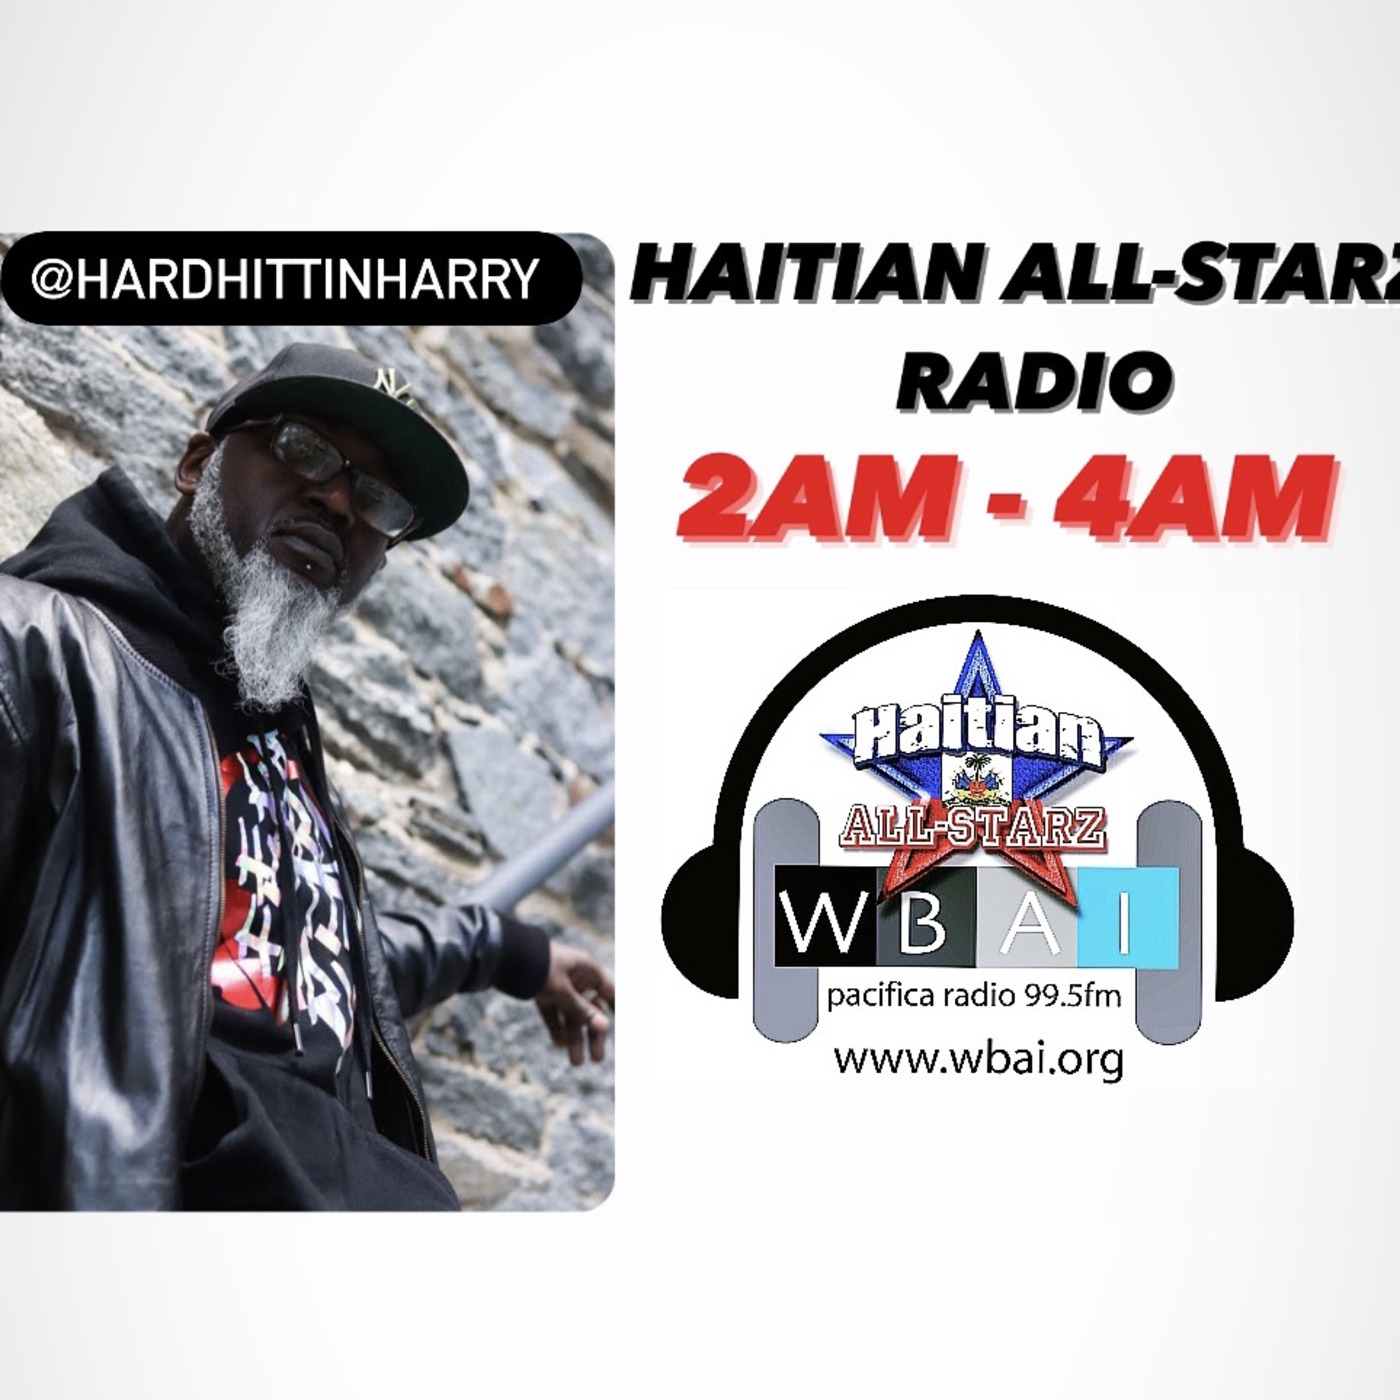 Episode 166: HAITIAN ALL-STARZ RADIO - WBAI 99.5 FM - EPISODE #162 - HARD HITTIN HARRY